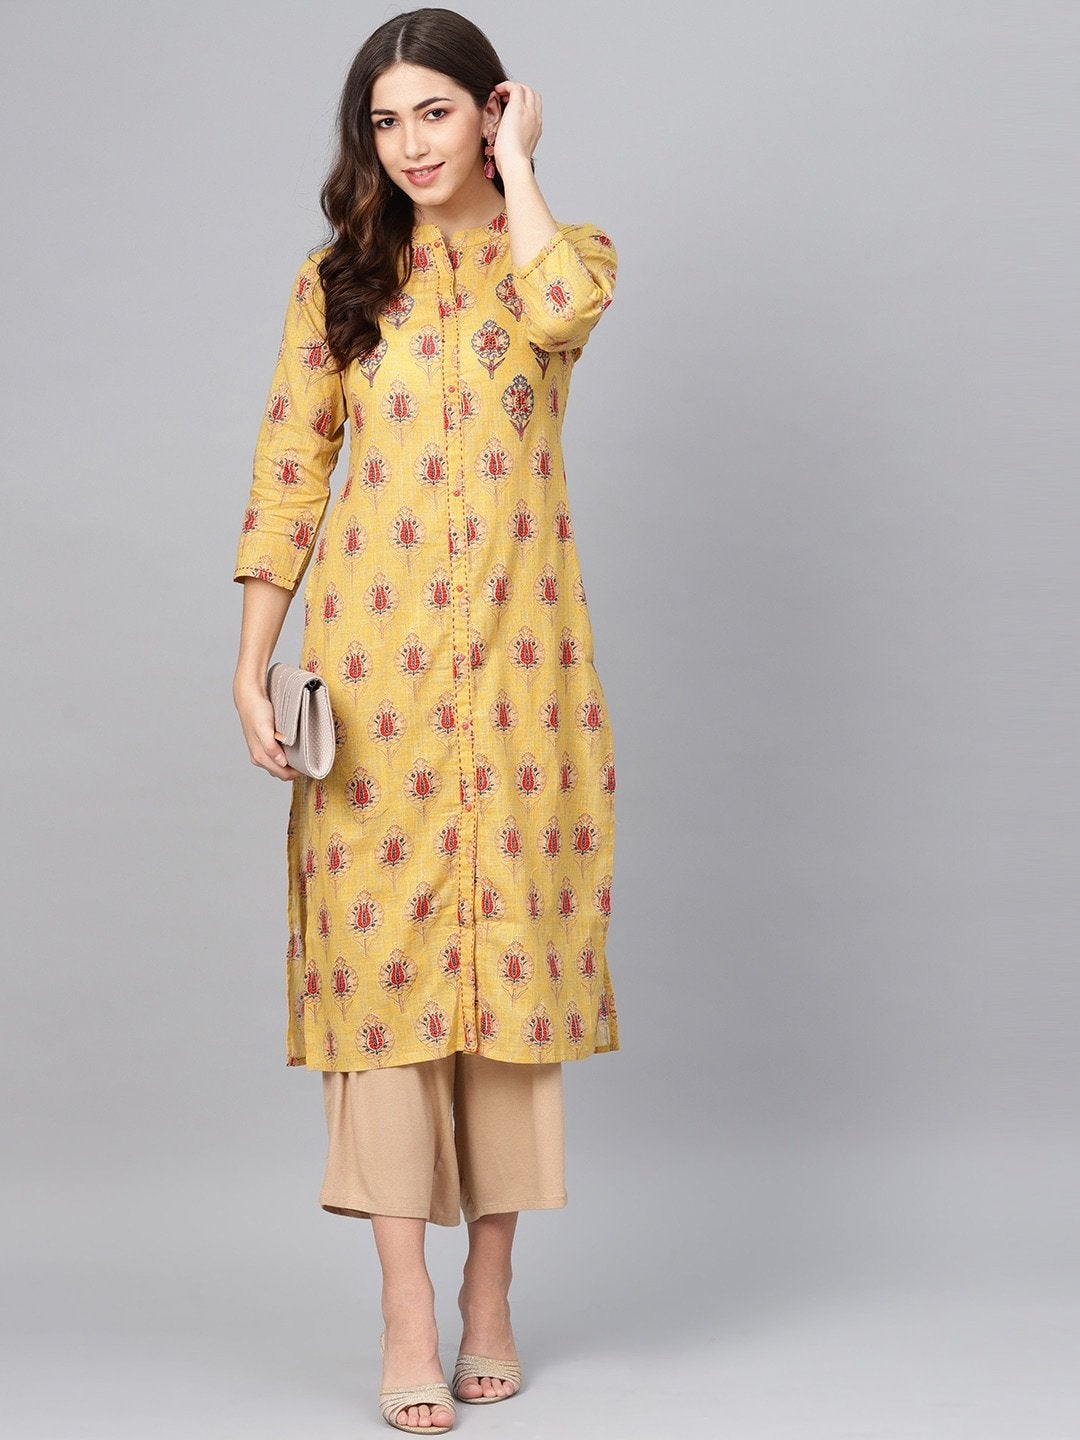 Women's Mustard Yellow & Red Printed Straight Kurta - Meeranshi